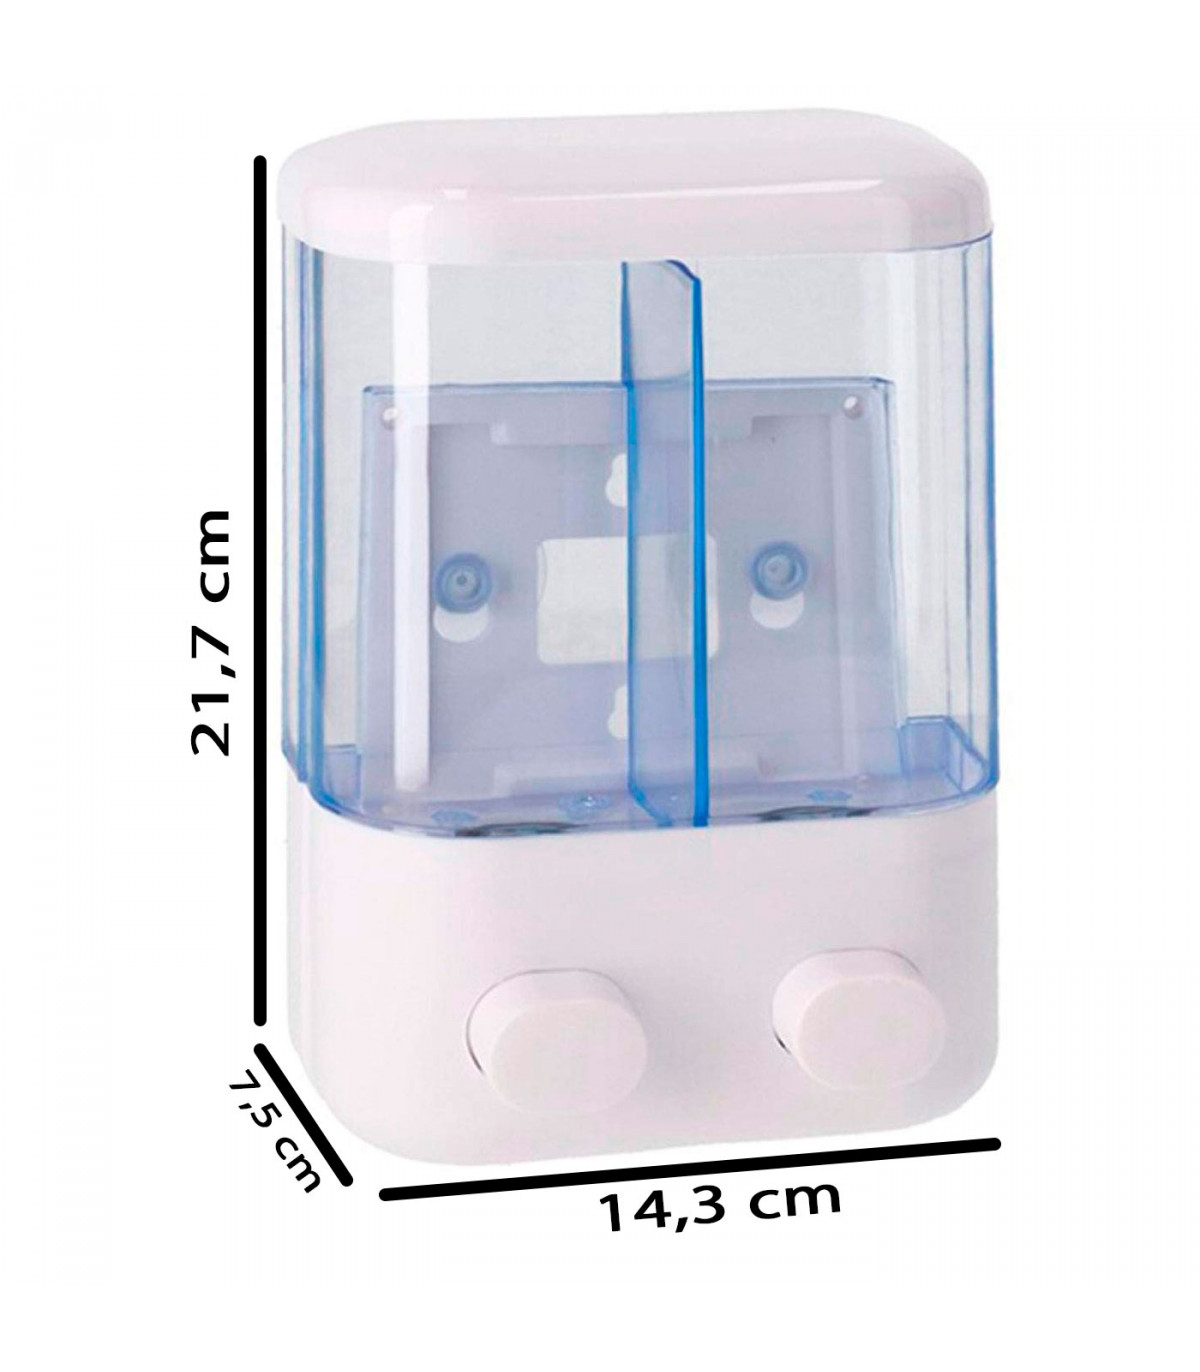 Tradineur - Dispensador de jabón líquido con 2 compartimentos de